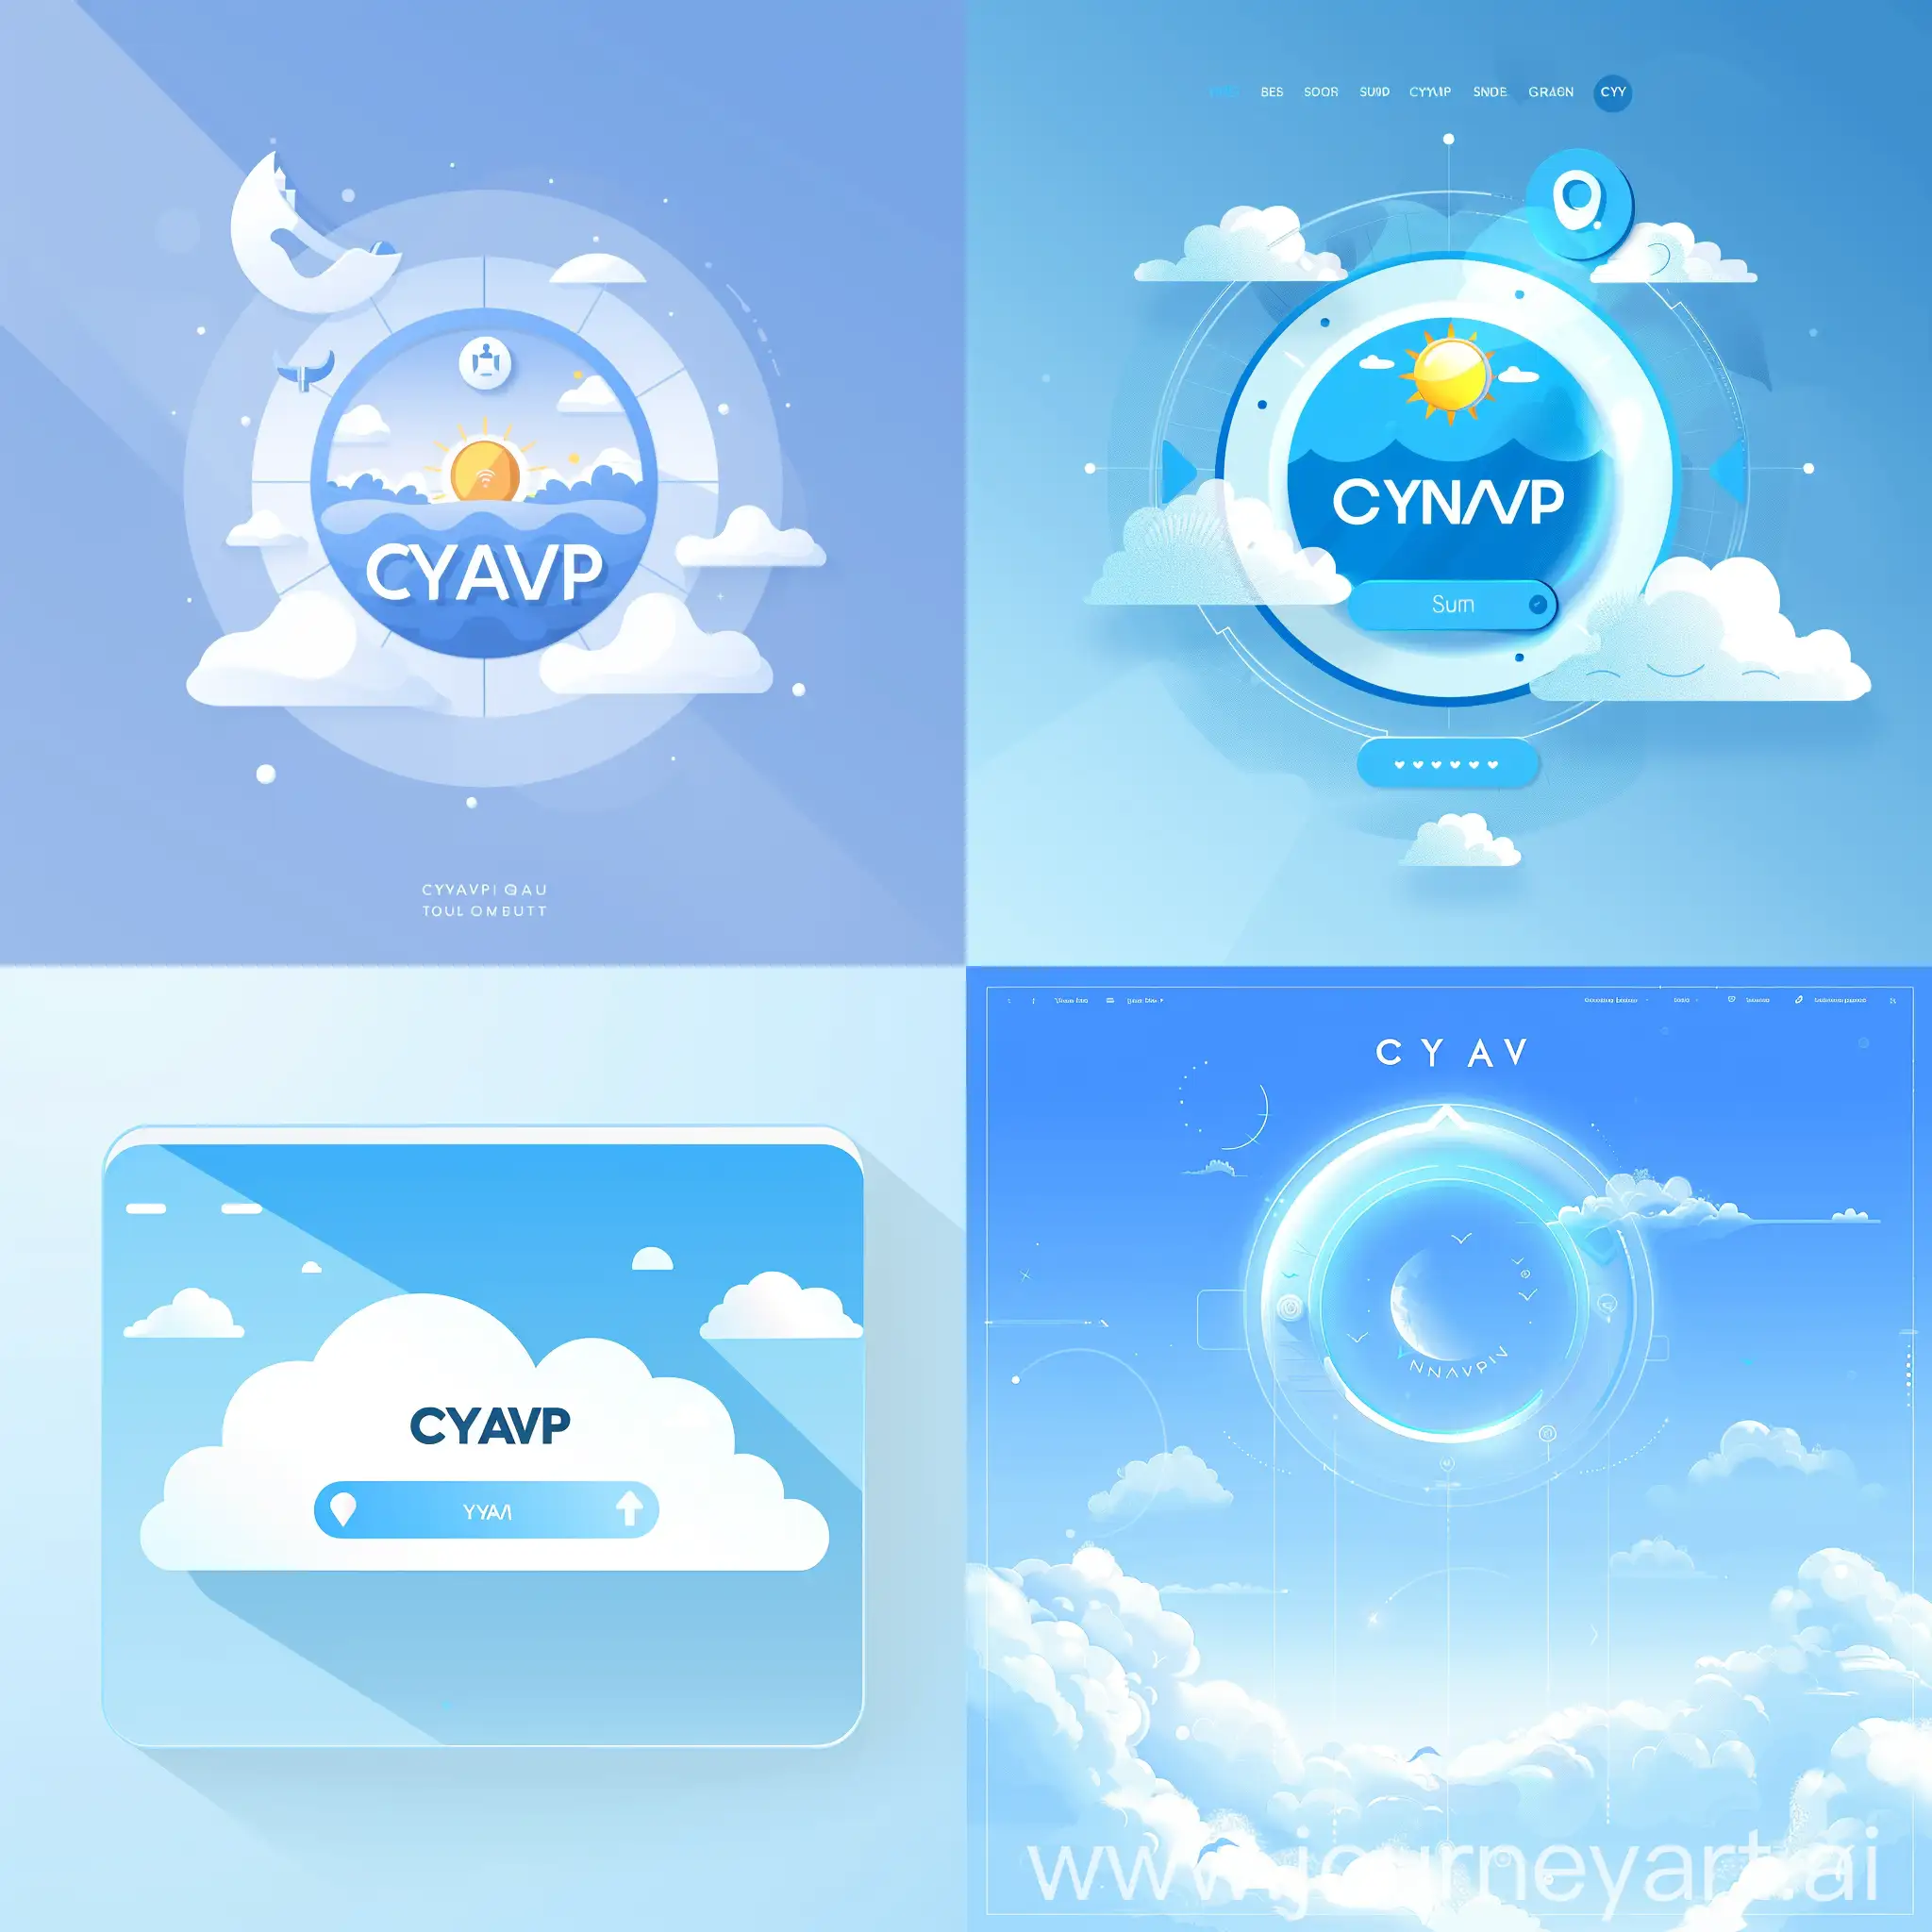 设计一个网址导航的站点图标，设计风格为天蓝色，需要包含寓意为：朝阳网址导航站，CYNAV 这个主题